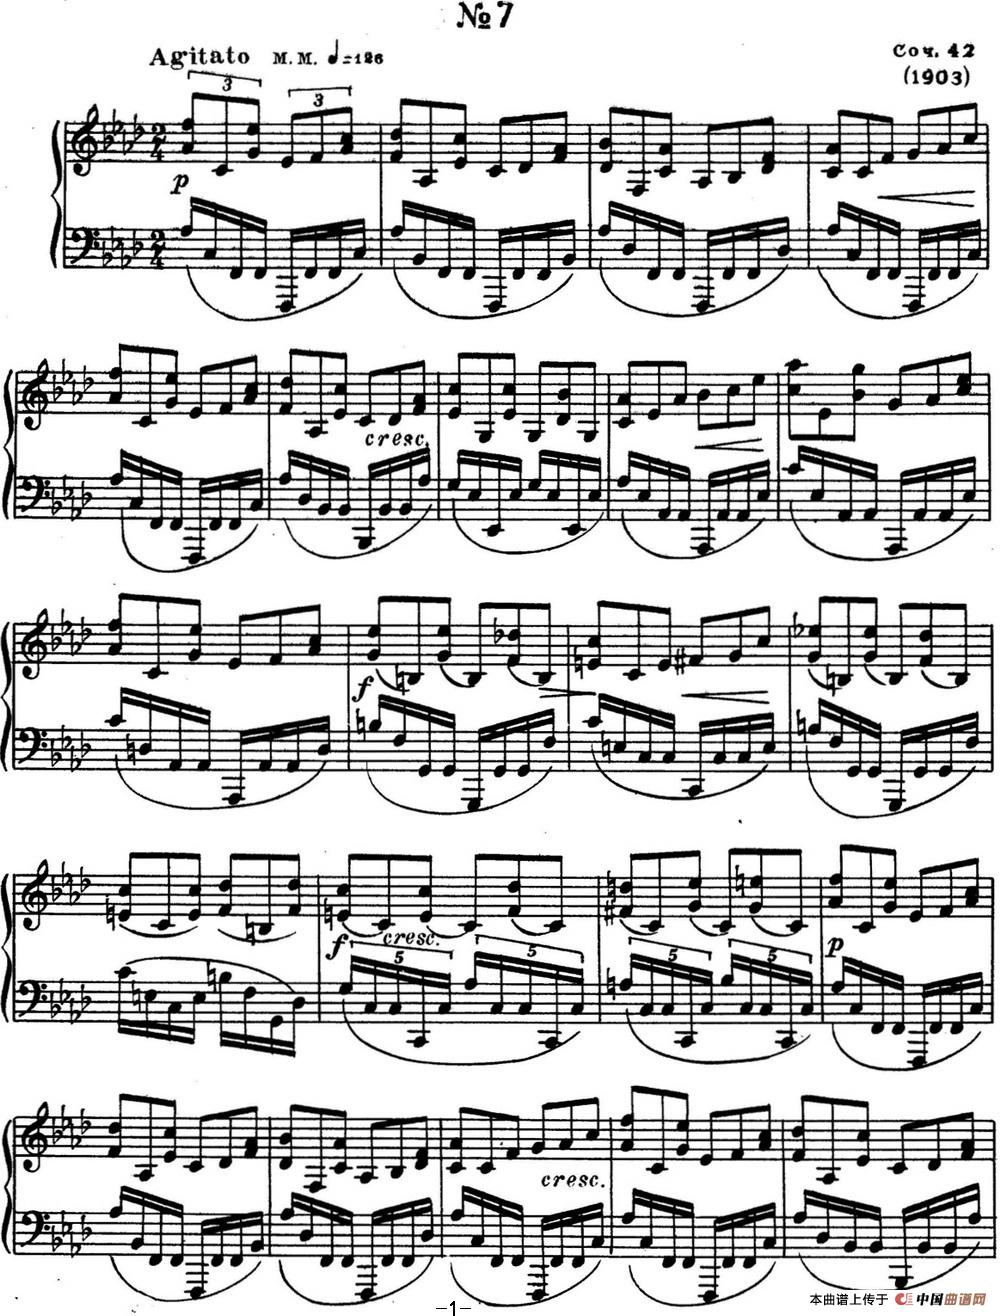 斯克里亚宾 钢琴练习曲 Op.42 No.7 Alexander Scriabin